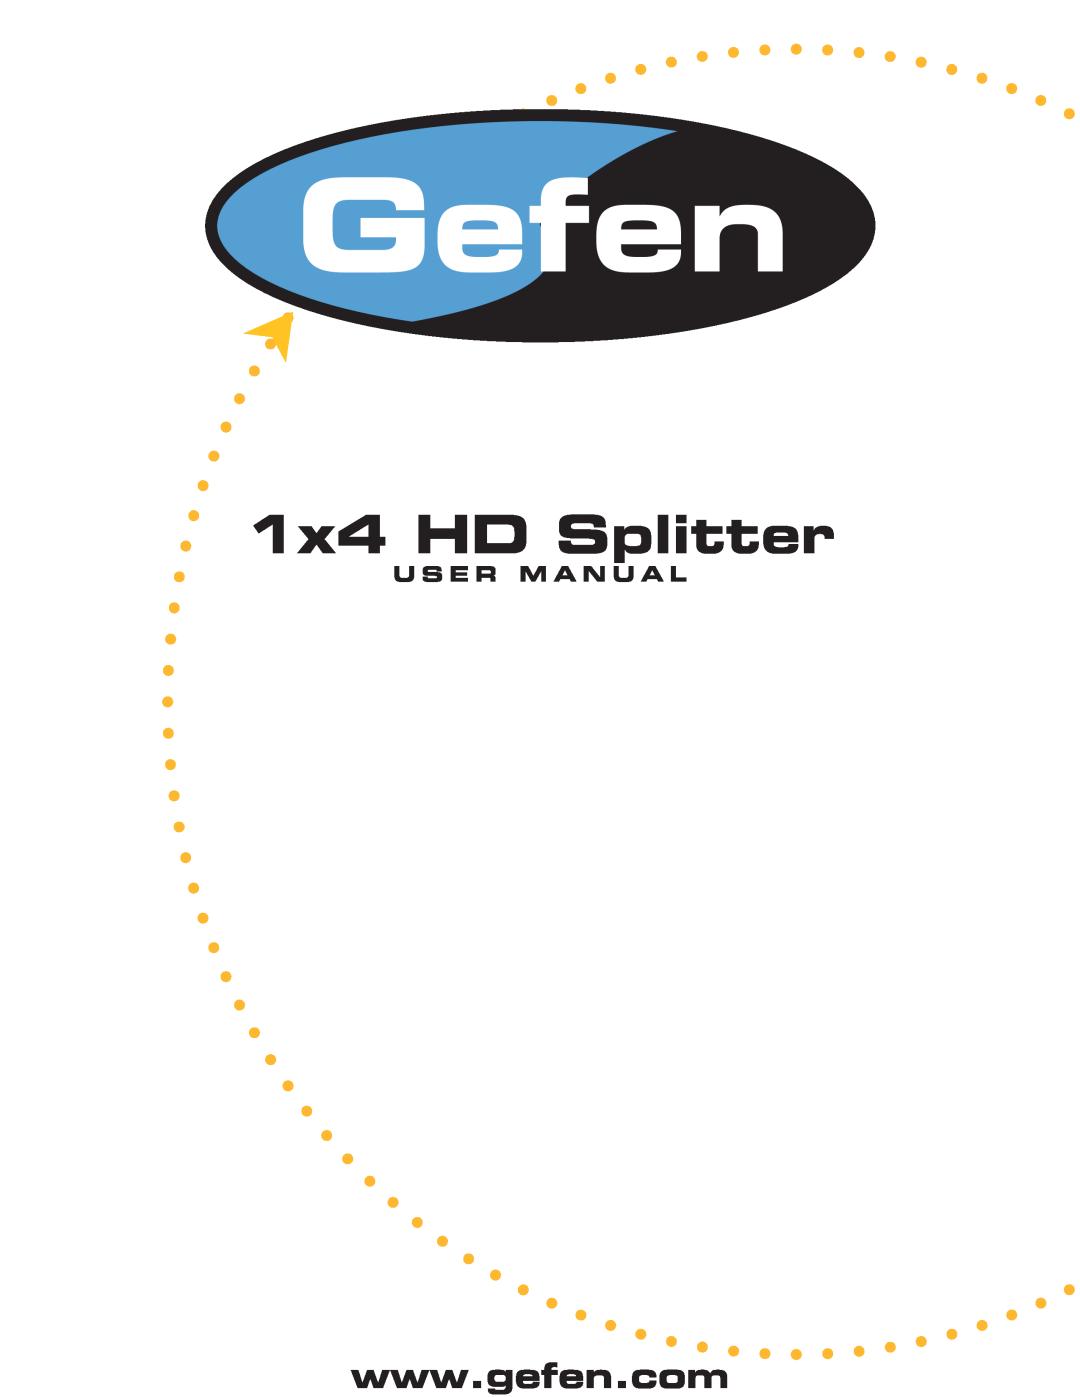 Gefen user manual U S E R M A N U A L, 1x4 HD Splitter 